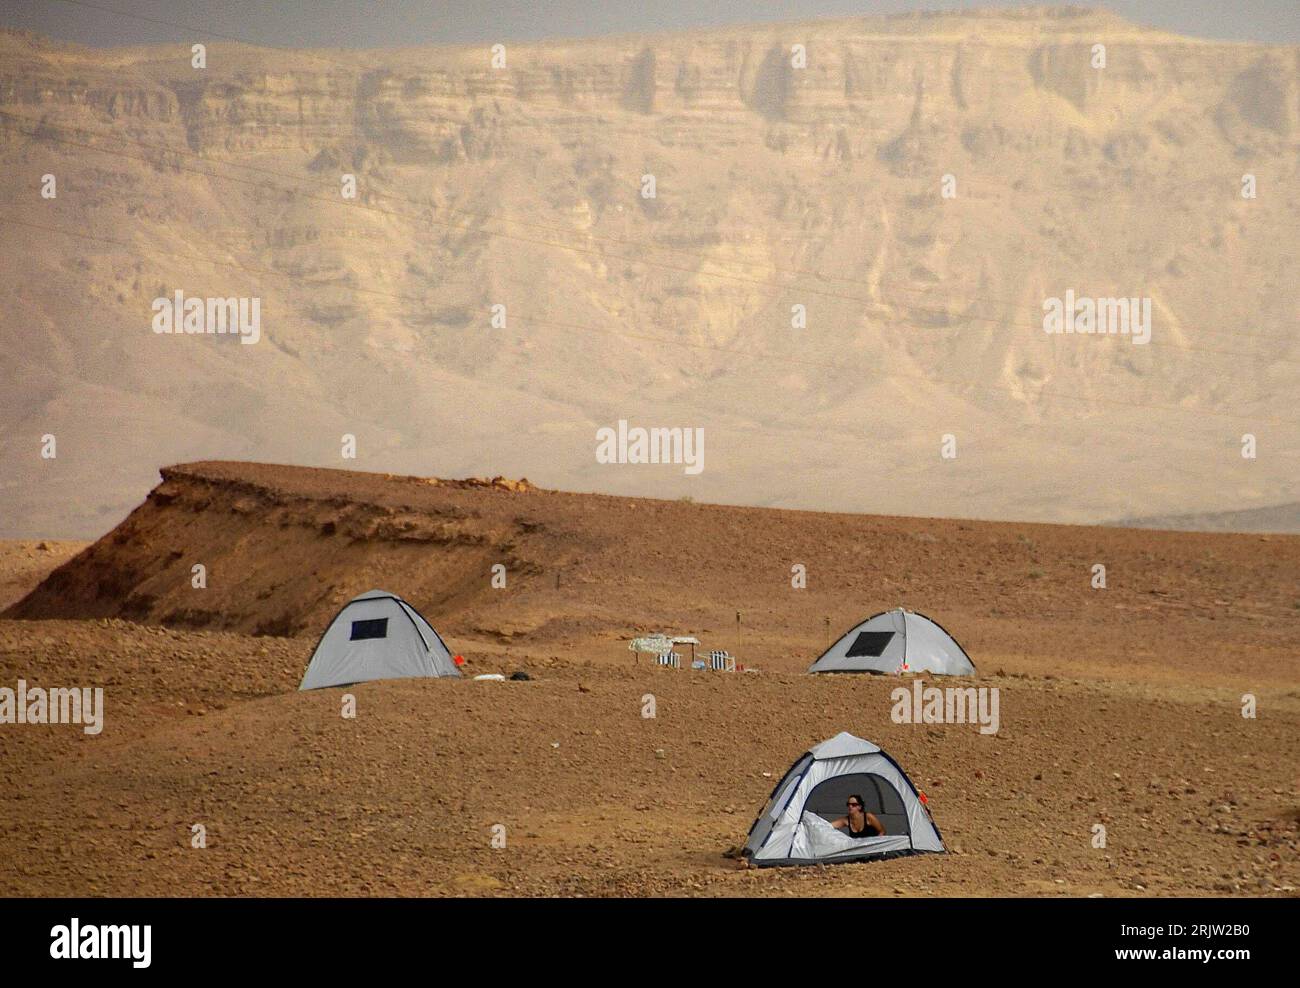 Bildnummer: 51824603 Datum: 08.04.2007 Copyright: imago/Xinhua camper haben in der Negev-Wüste ihre Zelte aufgeschlagen - Israele - PUBLICATIONxNOTxINxCHN; 2007, Negev, Zelt, campen, zelten, Wüsten; , quer, Kbdig, totale, Wüsten, Israele, o0 Zeltlager, Camping, Campingurlaub, Zelturlaub, Outdoor, Abenteuerurlaub Foto Stock